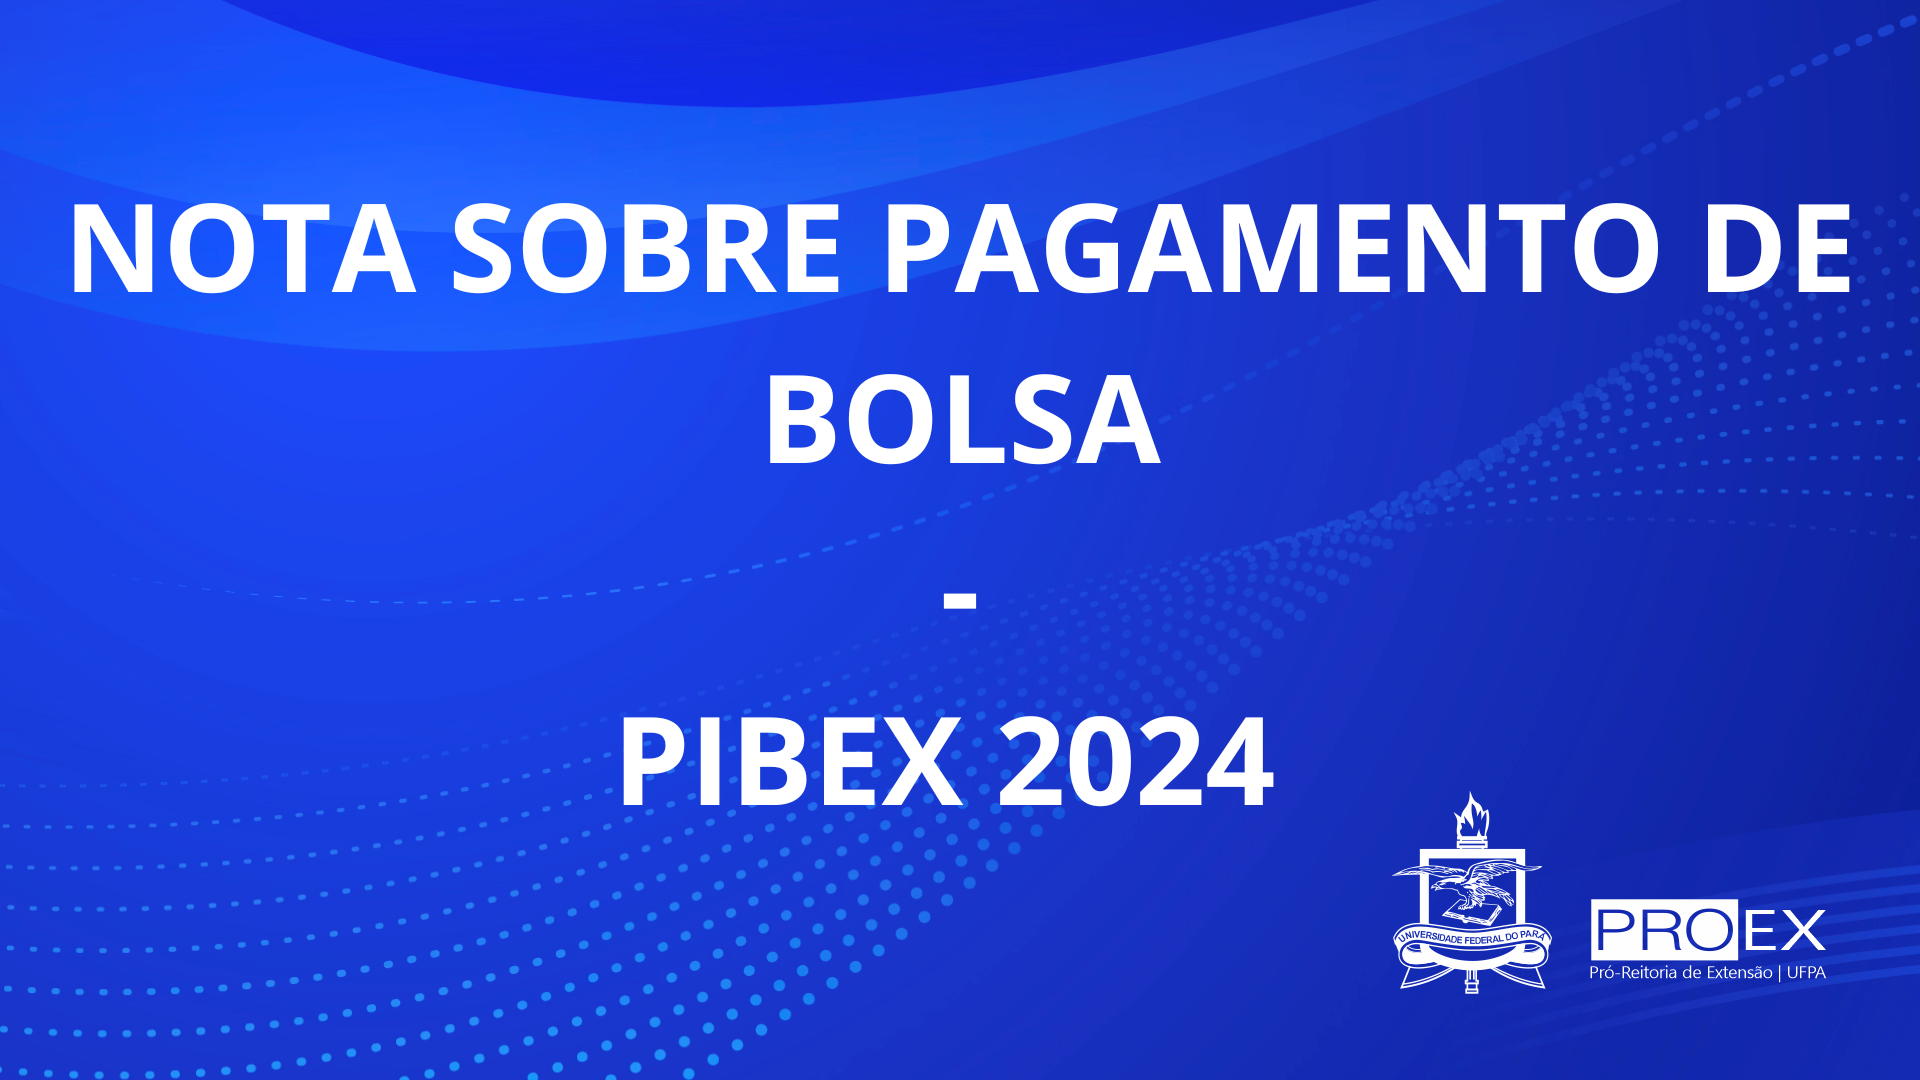 NOTA PAGAMENTO DE BOLSA - PIBEX 2024 